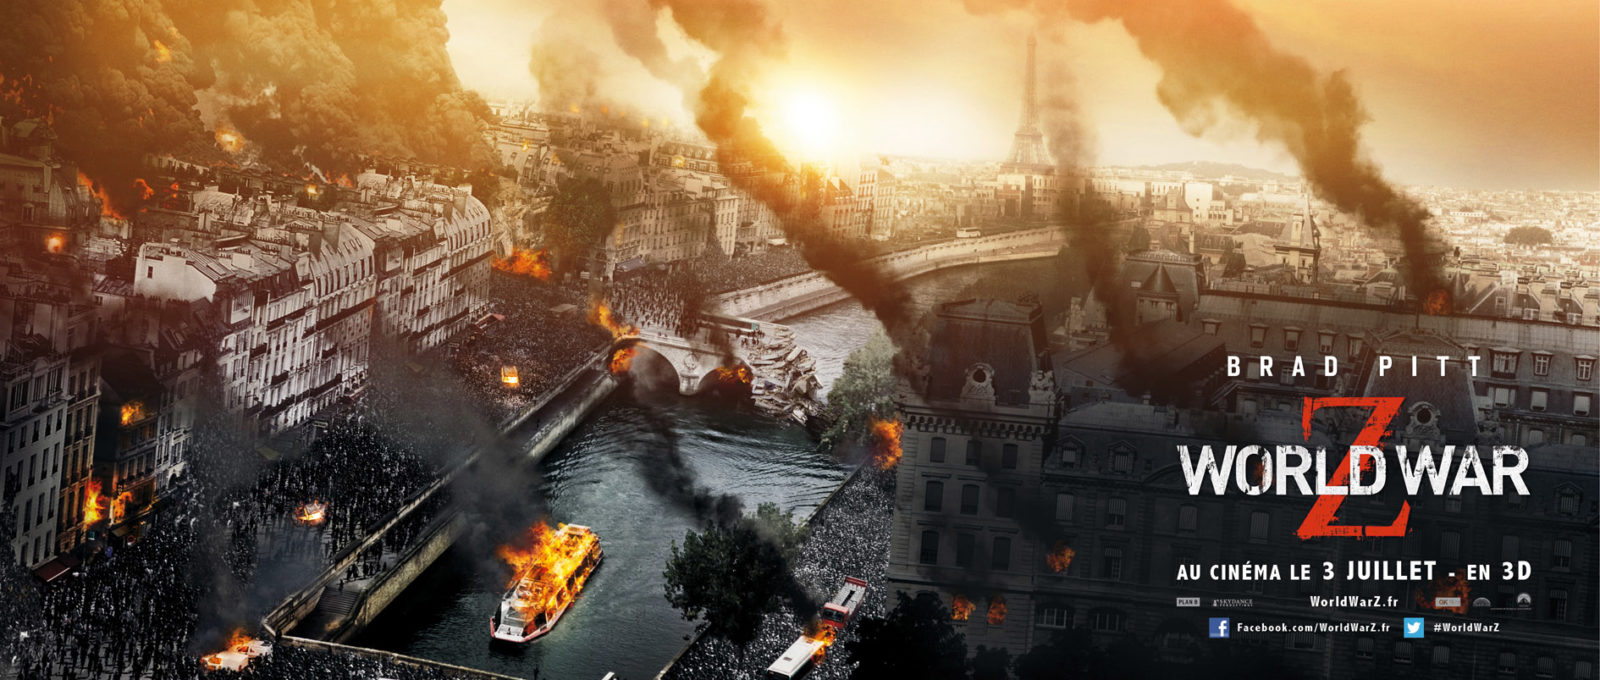 World War Z est un film d'horreur américain réalisé par Marc Forster et dont la sortie française est prévue pour le 3 juillet 2013. En attendant, des affiches font leur apparition, avec les principales capitales du monde détruites.